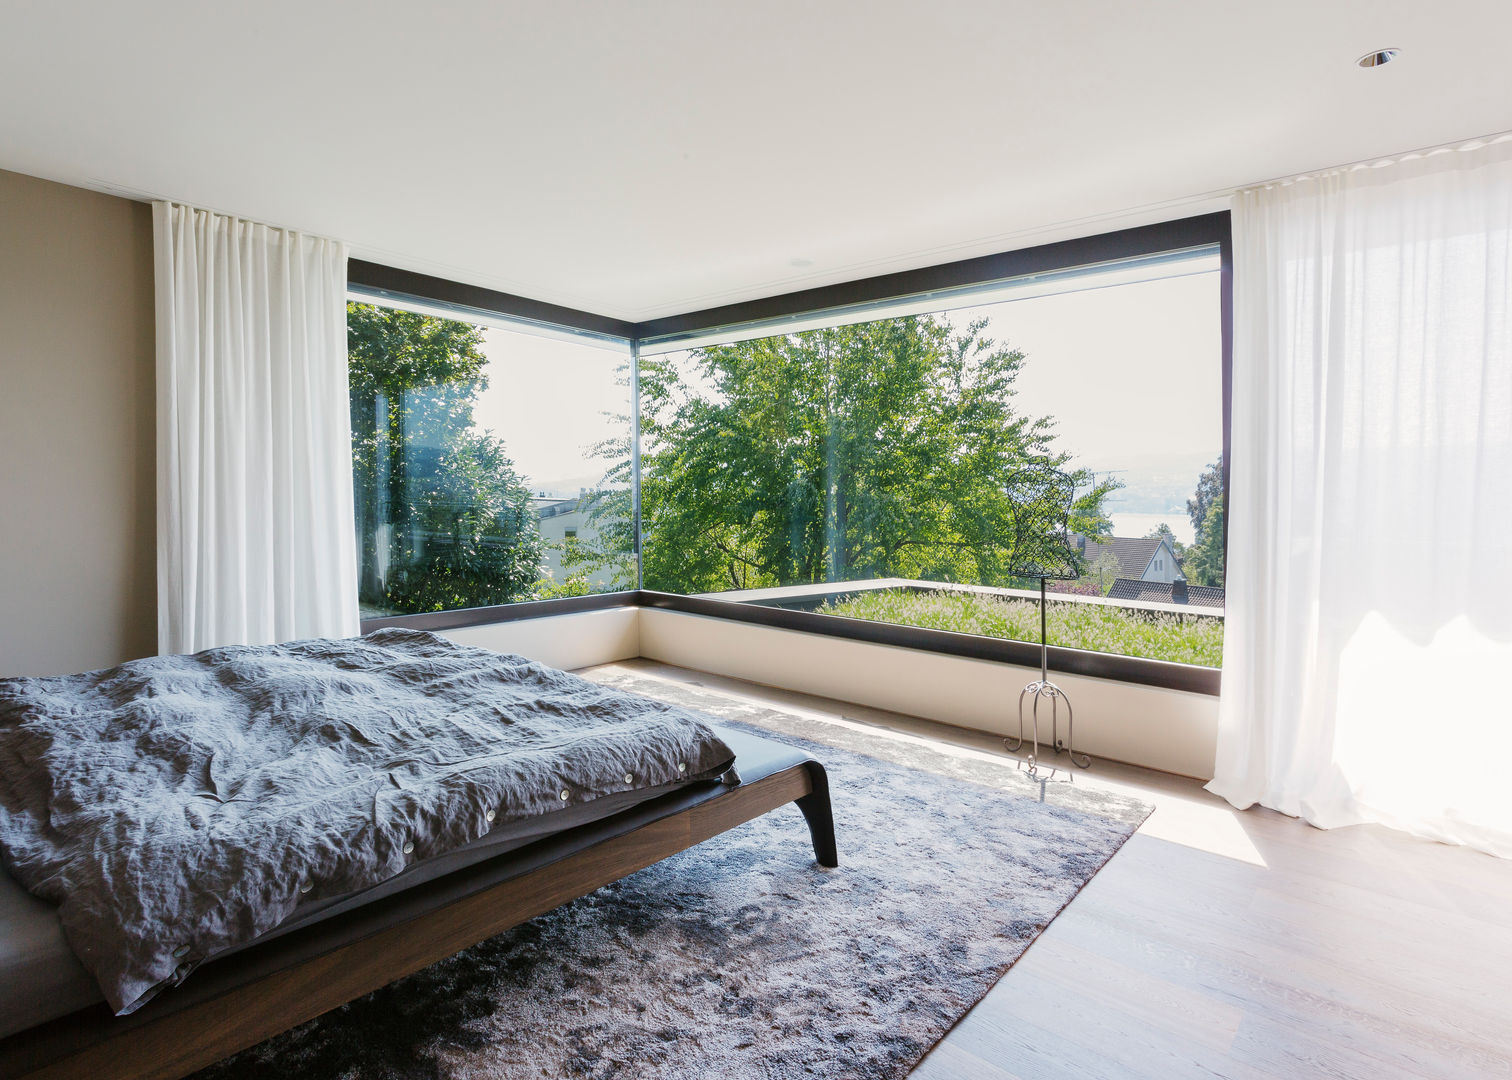 Objekt 336: Traumhaftes Einfamilienhaus mit Panoramablick , meier architekten zürich meier architekten zürich غرفة نوم